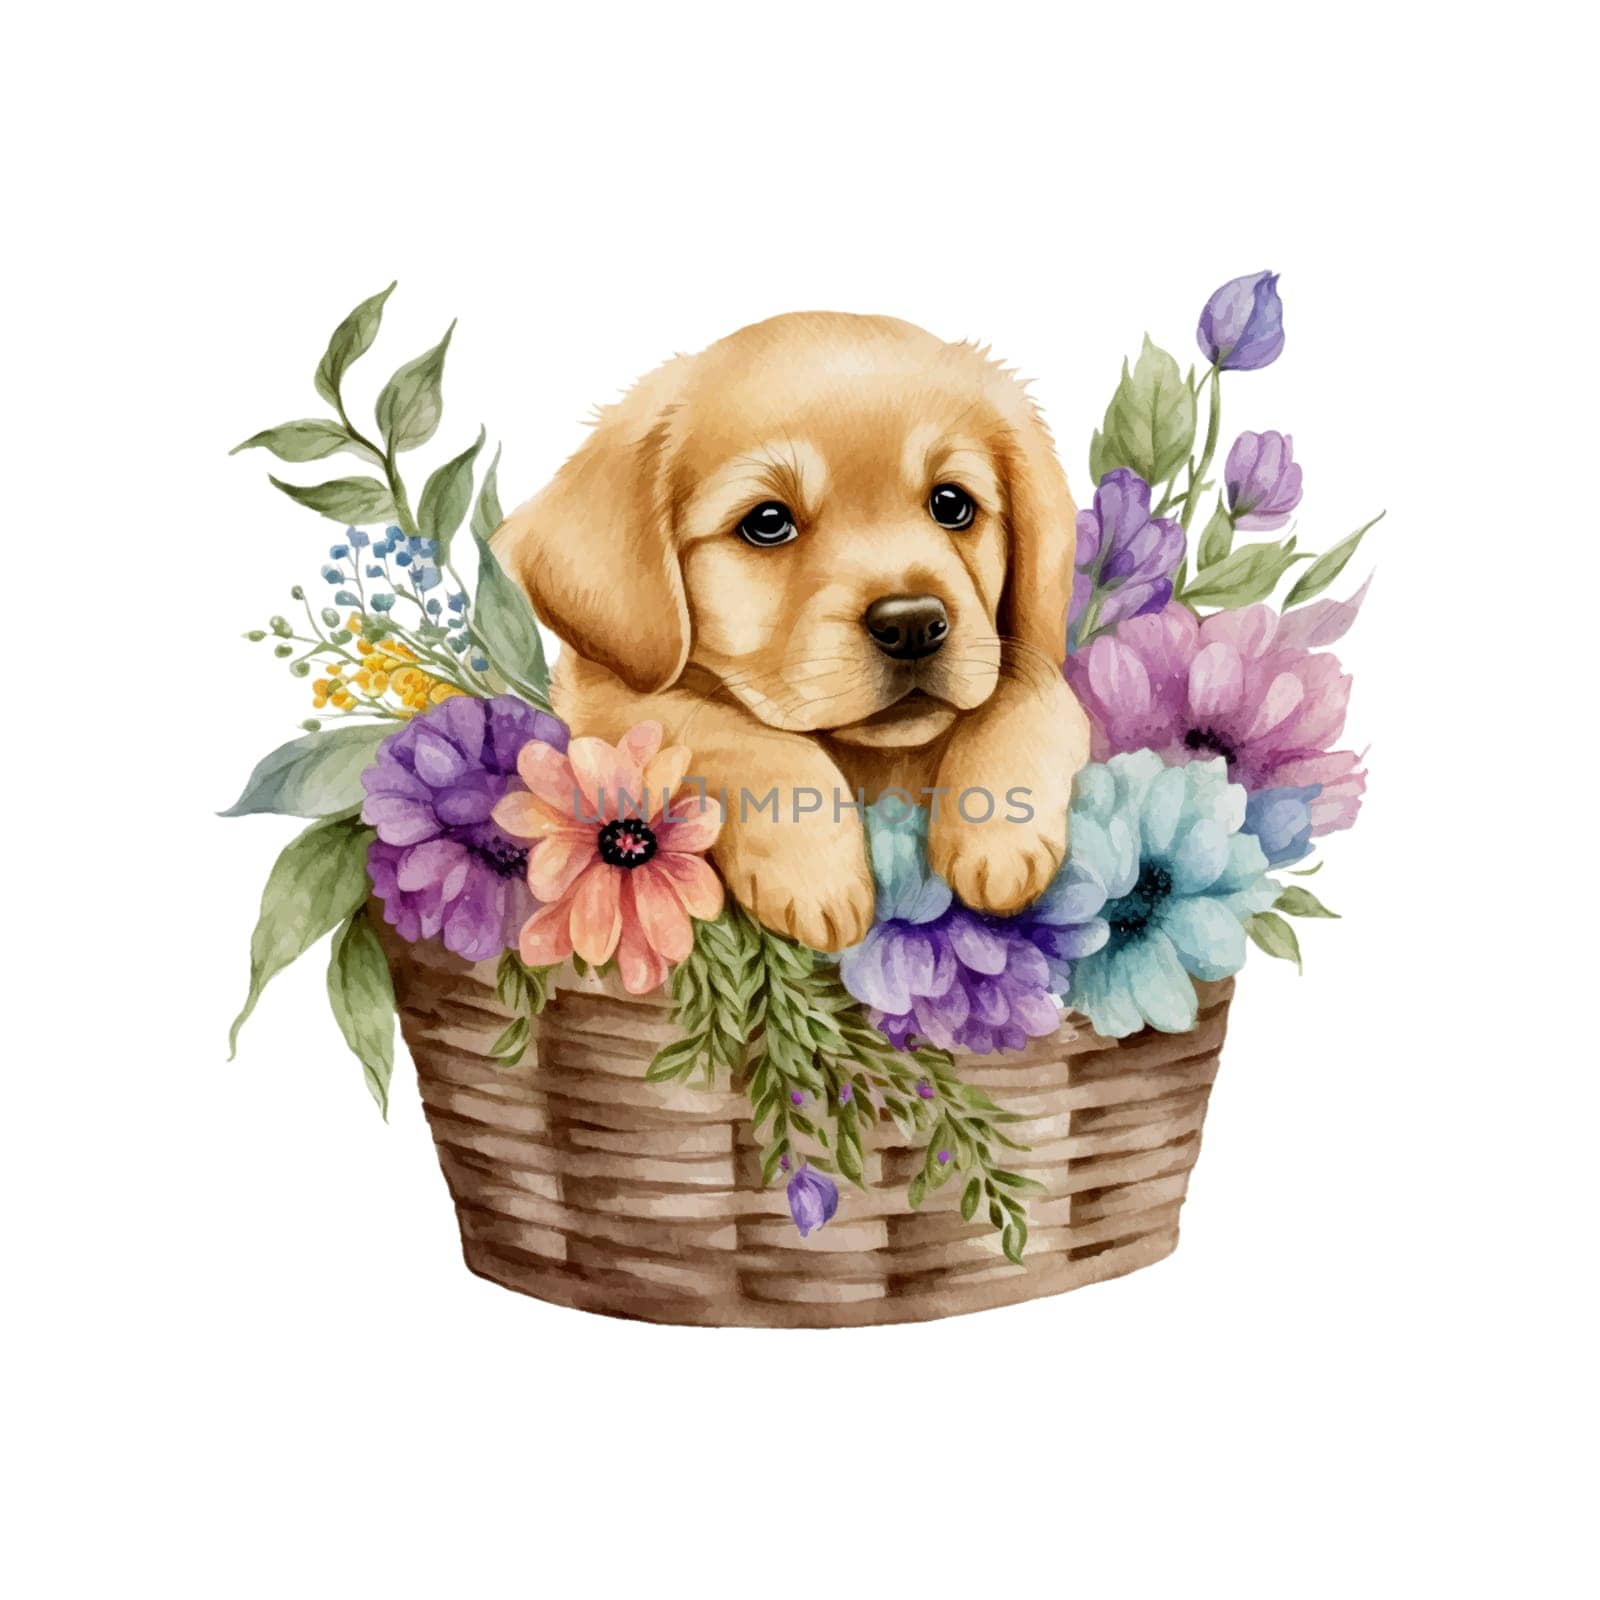 Baby Golden Retreiver Puppy in Flower Basket. Cute puppy in basket watercolor illustration. by Skyecreativestudio